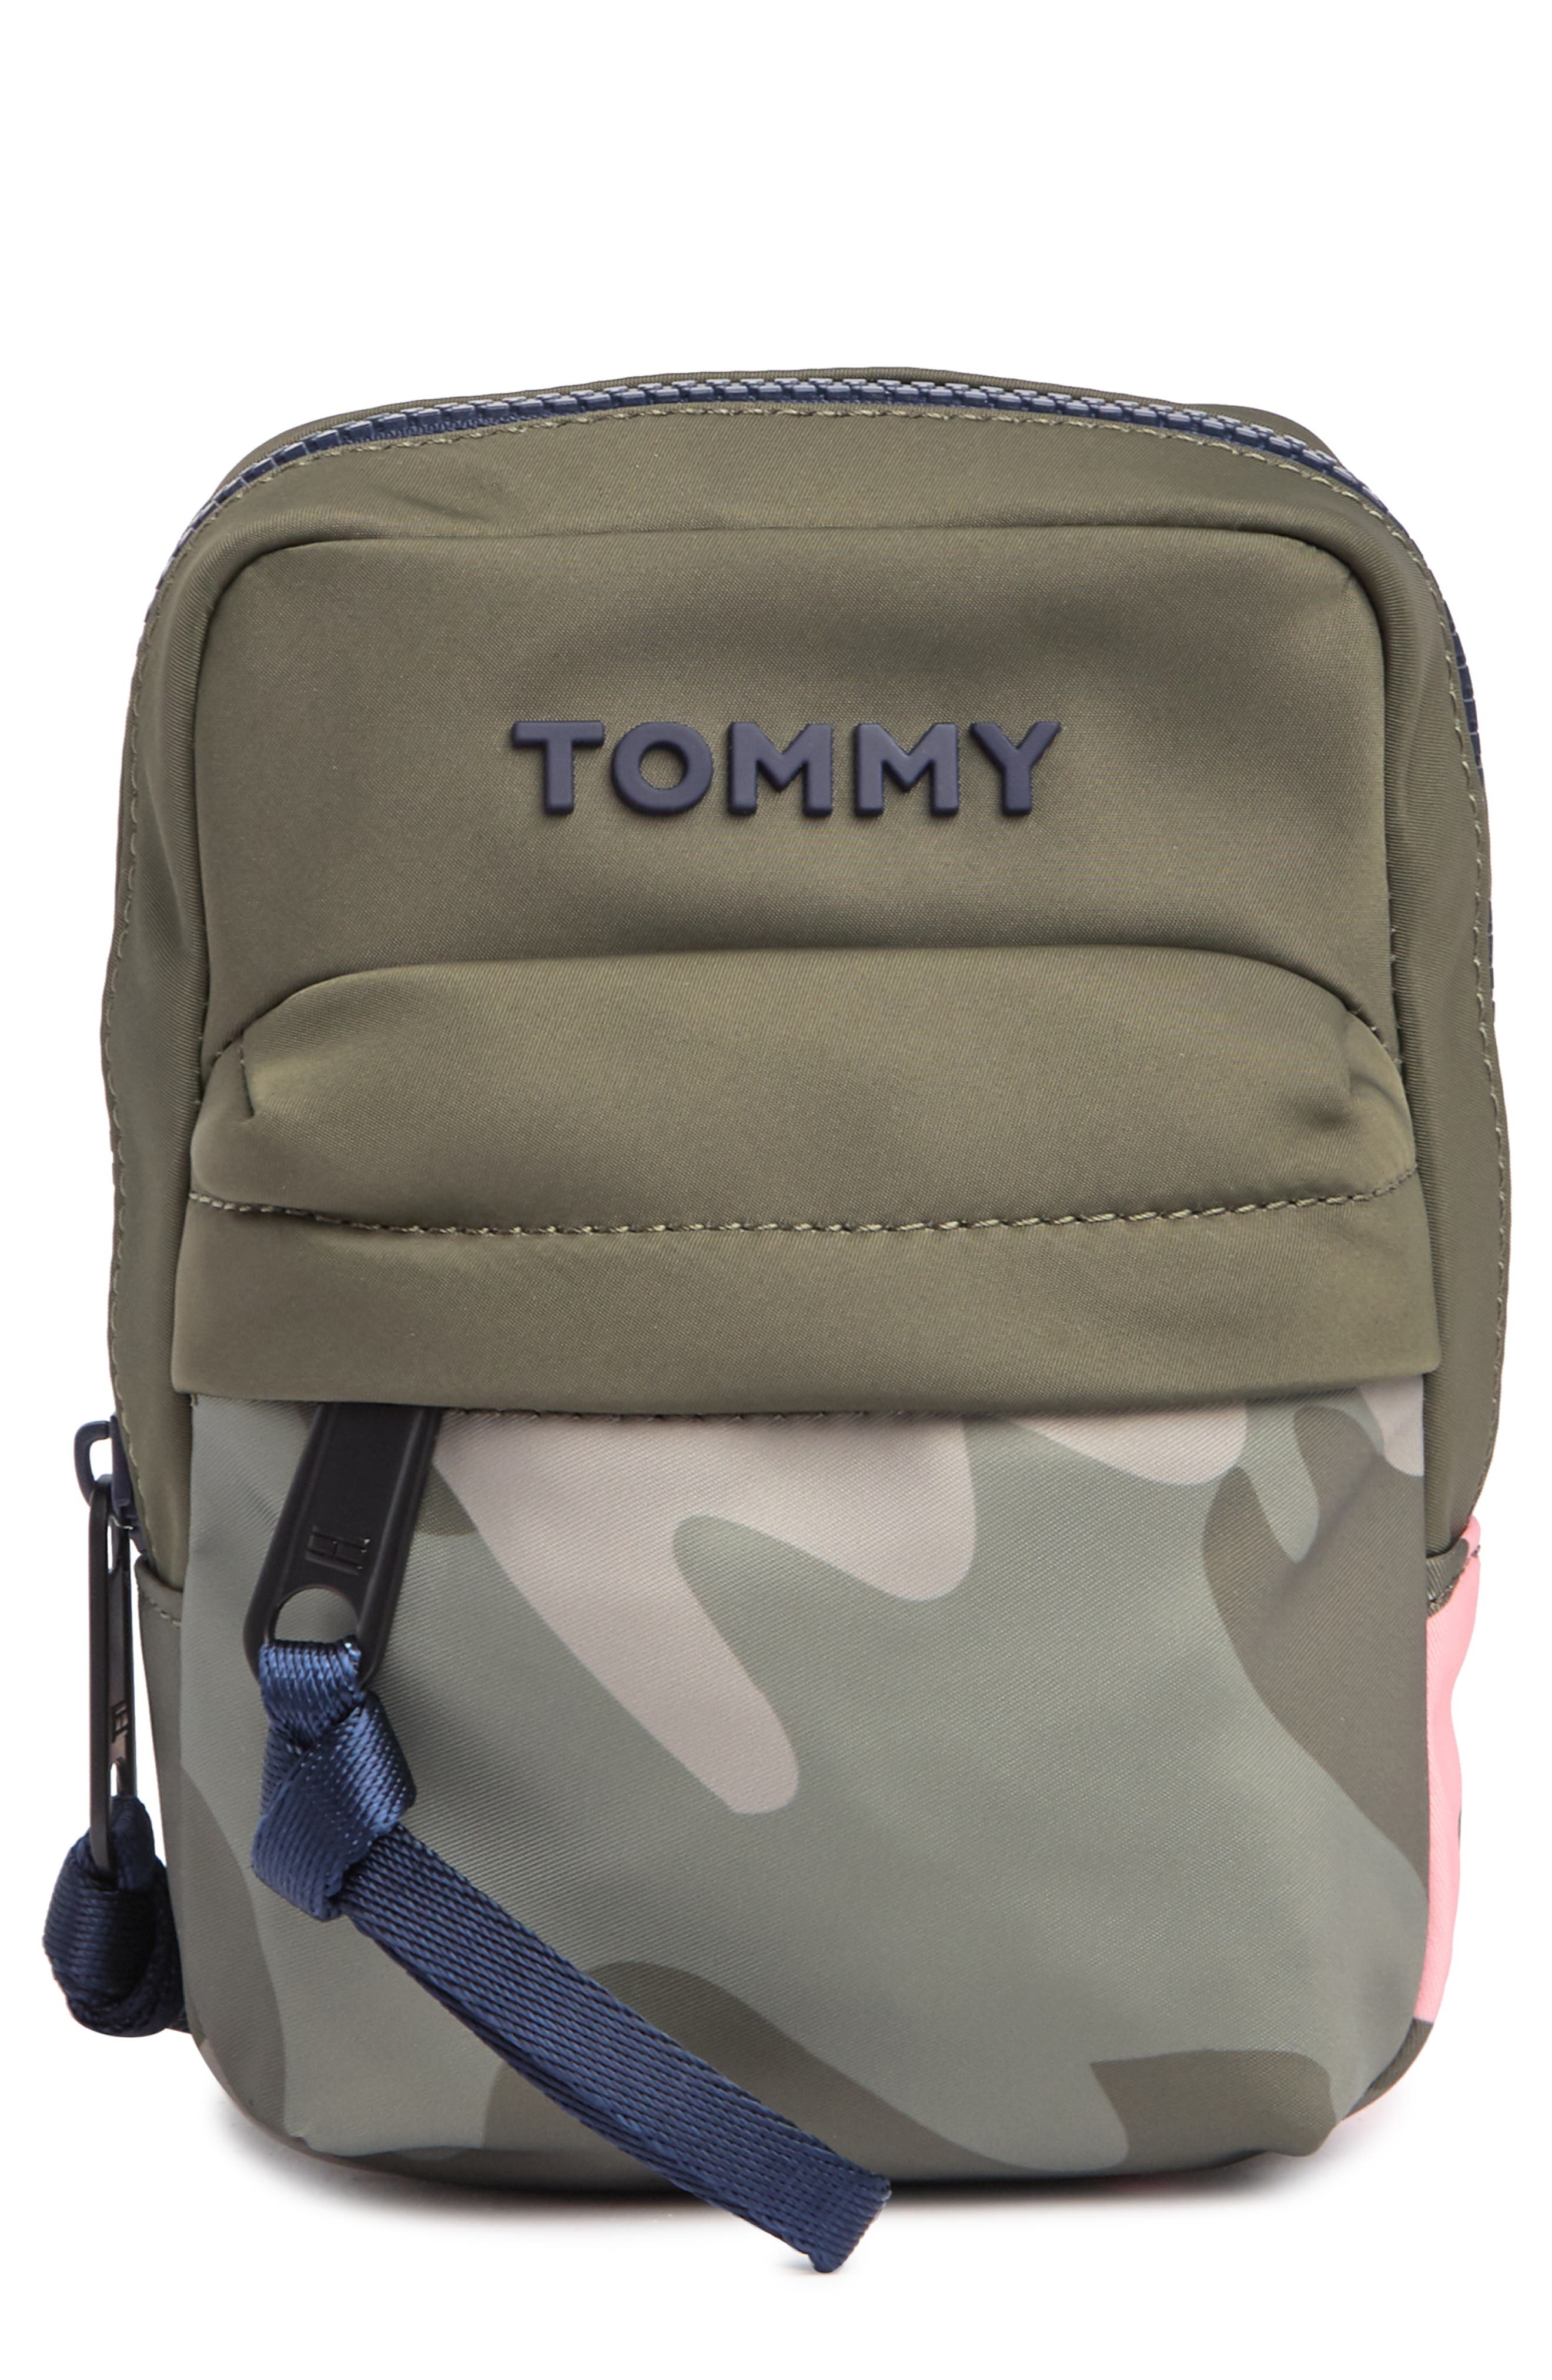 TOMMY HILFIGER Backpacks for Men | ModeSens